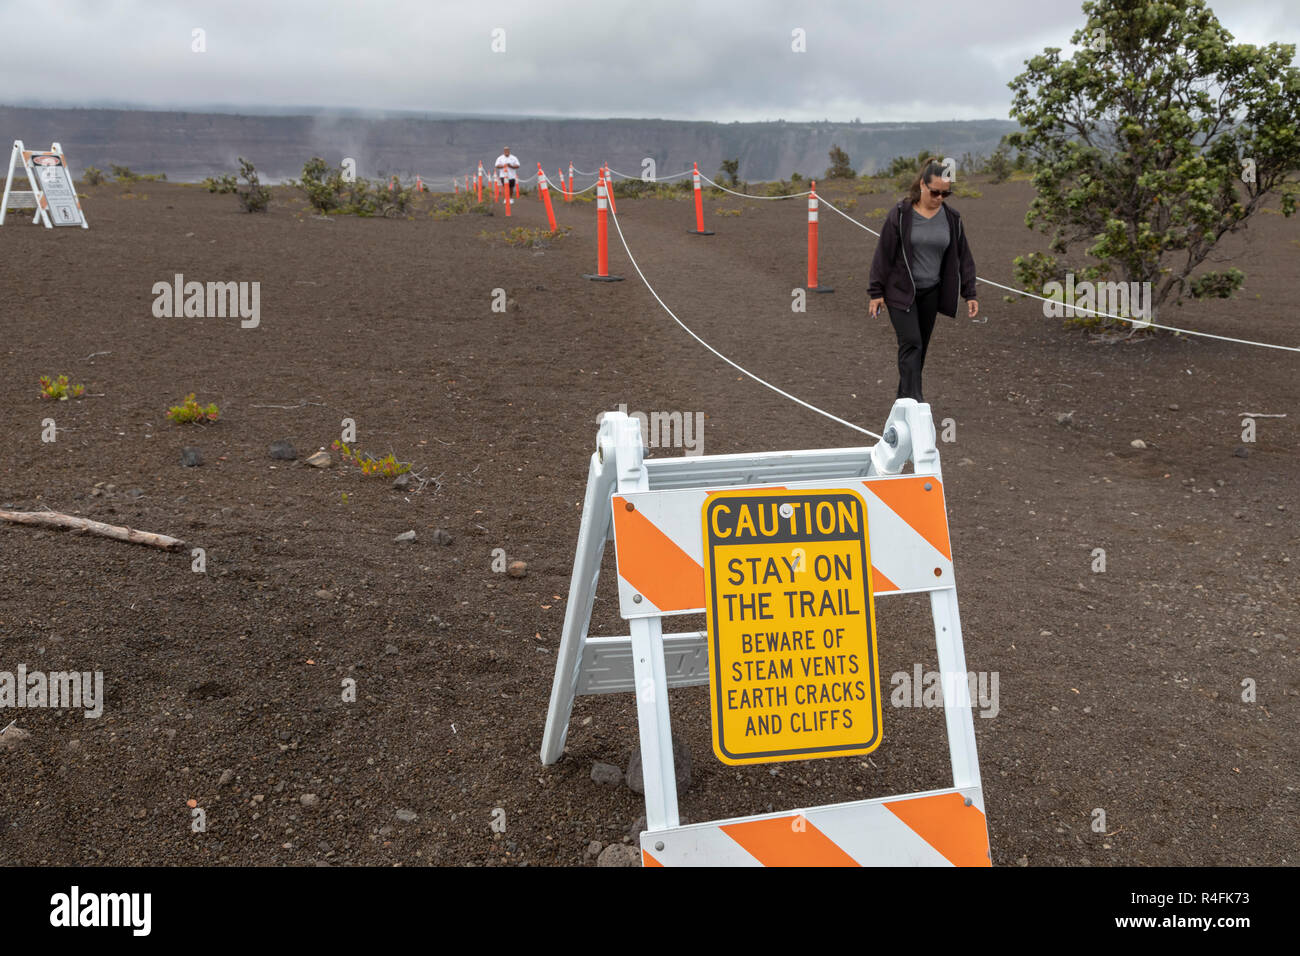 Hawaii Volcanoes National Park, New York - un signe met en garde les visiteurs sur les risques à la suite de l'éruption de 2018 du Kilauea volcano. Banque D'Images